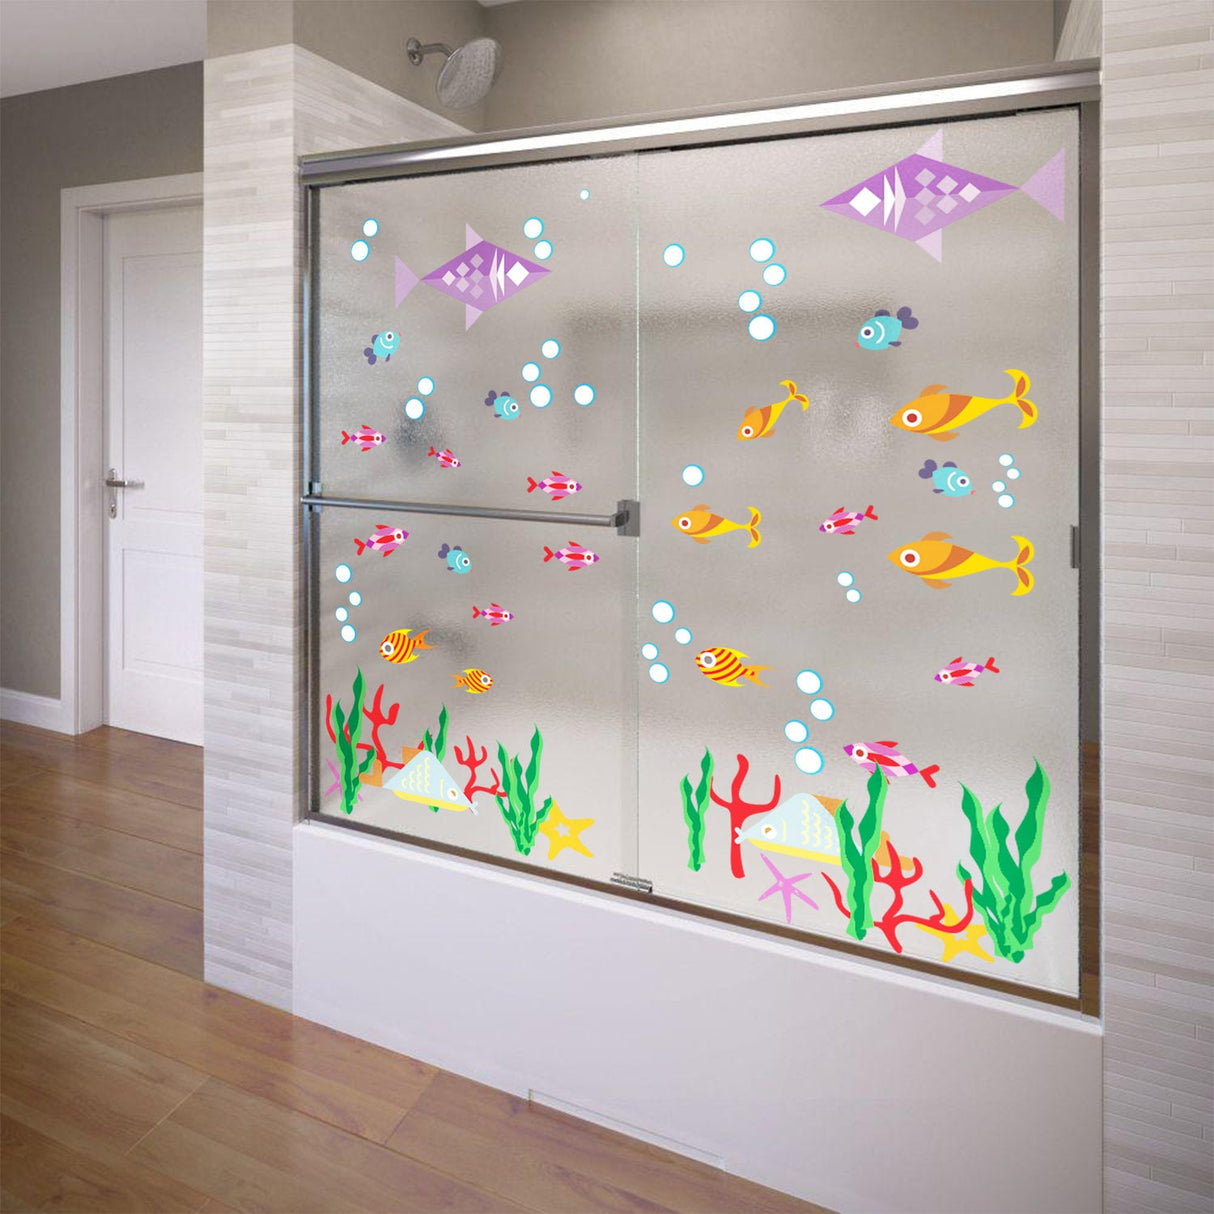 Bathroom Wall Decal - Ocean Animal Fish Decor Sticker